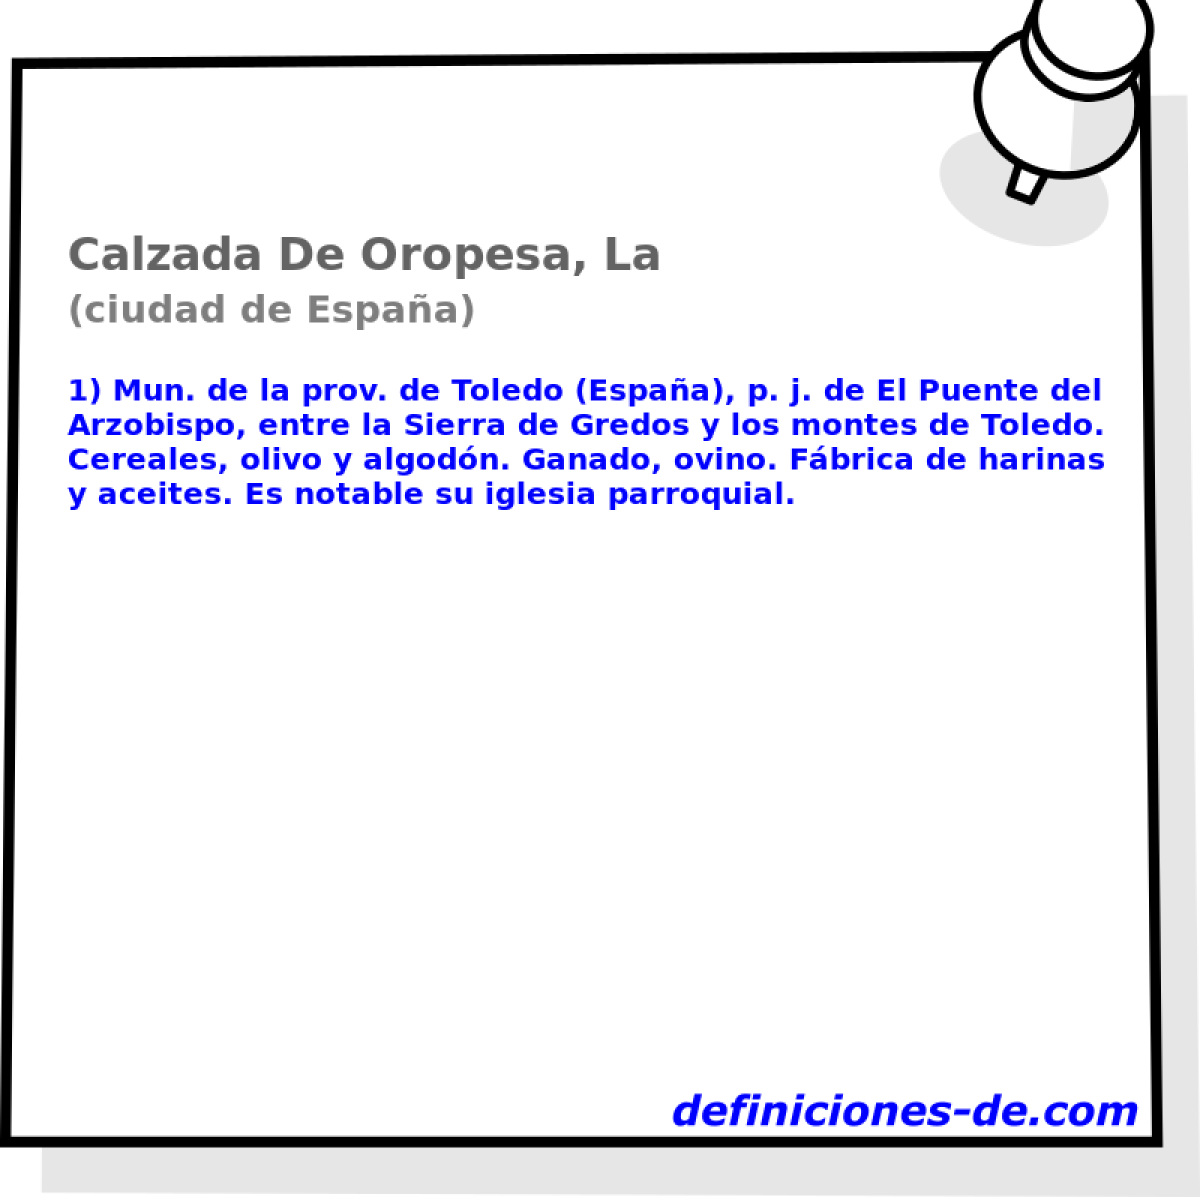 Calzada De Oropesa, La (ciudad de Espaa)